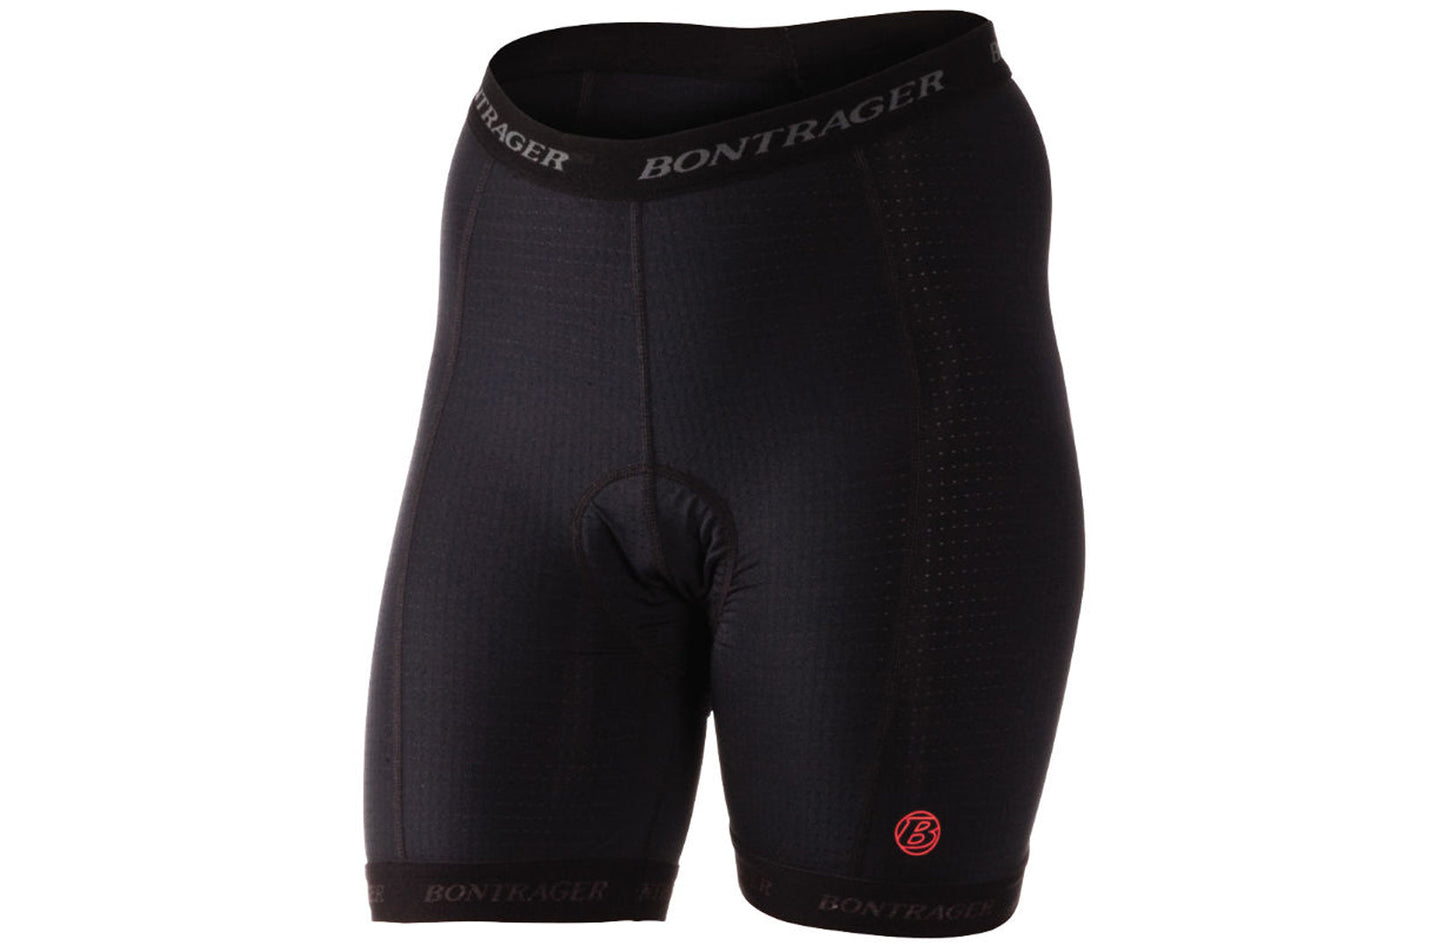 BONTRAGER SPORT CYCLELINER shorts/BONTRAGER SPORT CYCLELINER SHORT